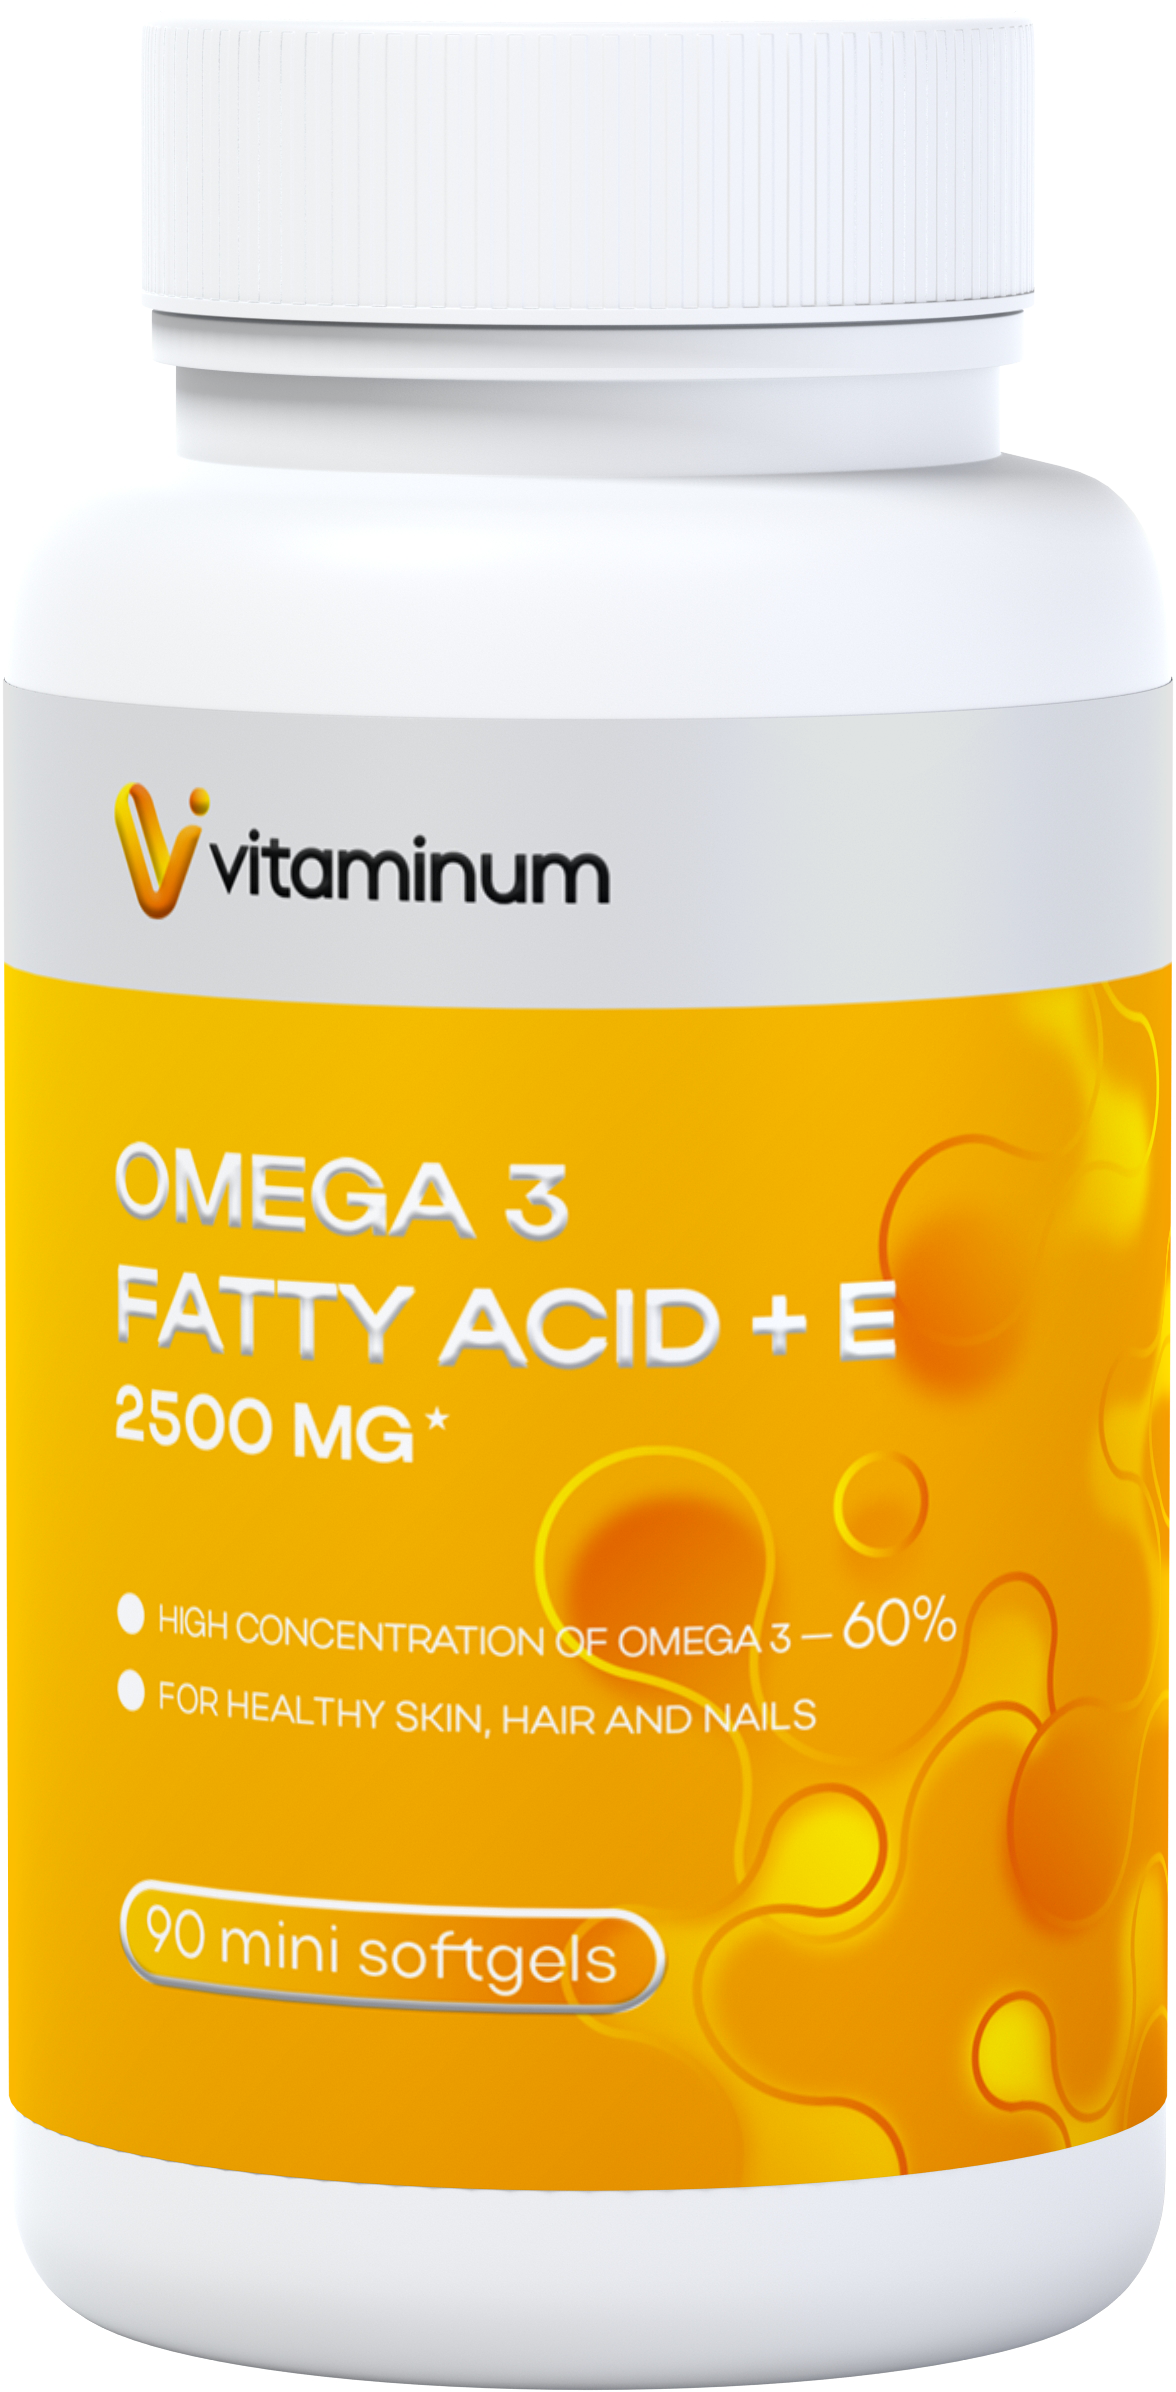  Vitaminum ОМЕГА 3 60% + витамин Е (2500 MG*) 90 капсул 700 мг   в Смоленске